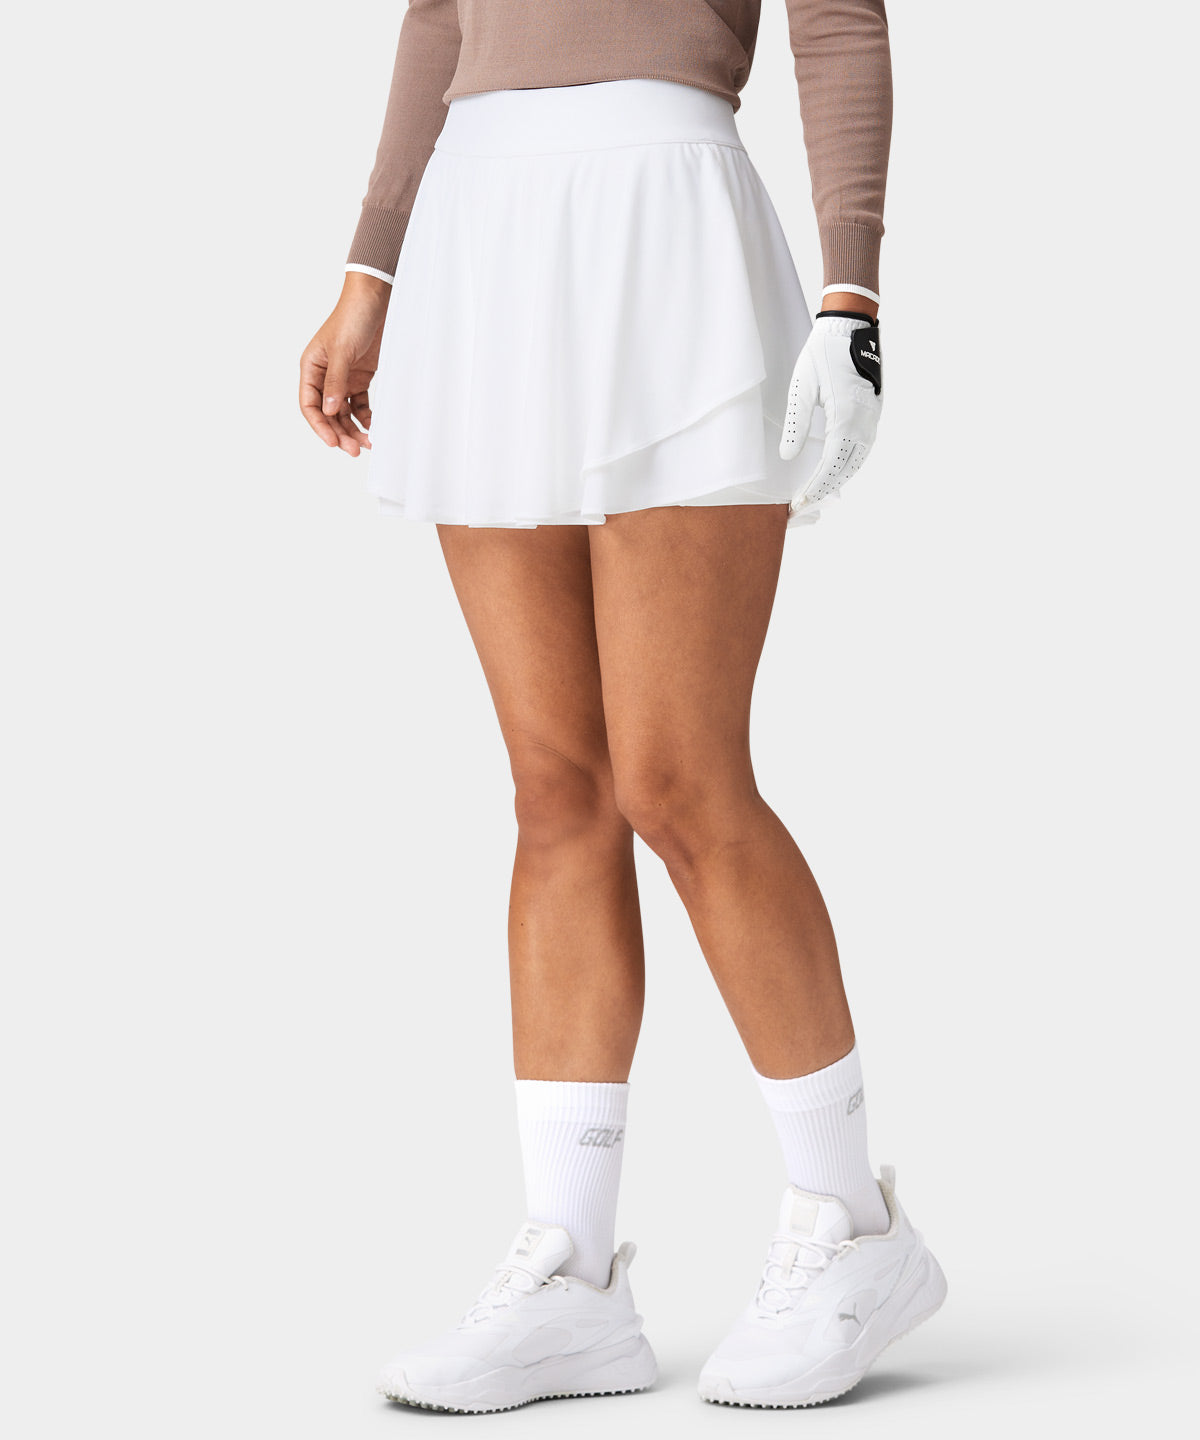 Cleo White Tour Skirt